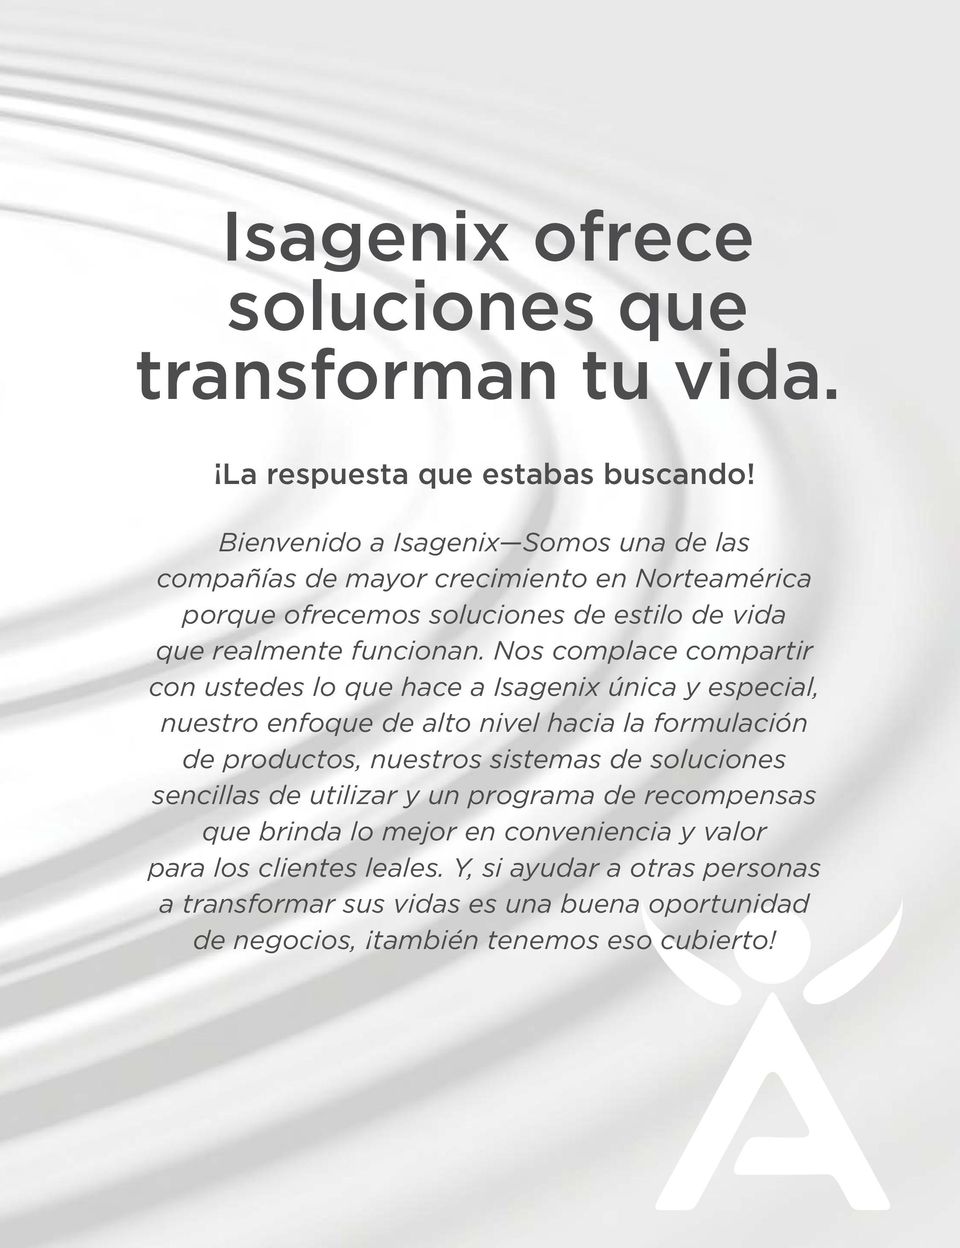 Nos complace compartir con ustedes lo que hace a Isagenix única y especial, nuestro enfoque de alto nivel hacia la formulación de productos, nuestros sistemas de